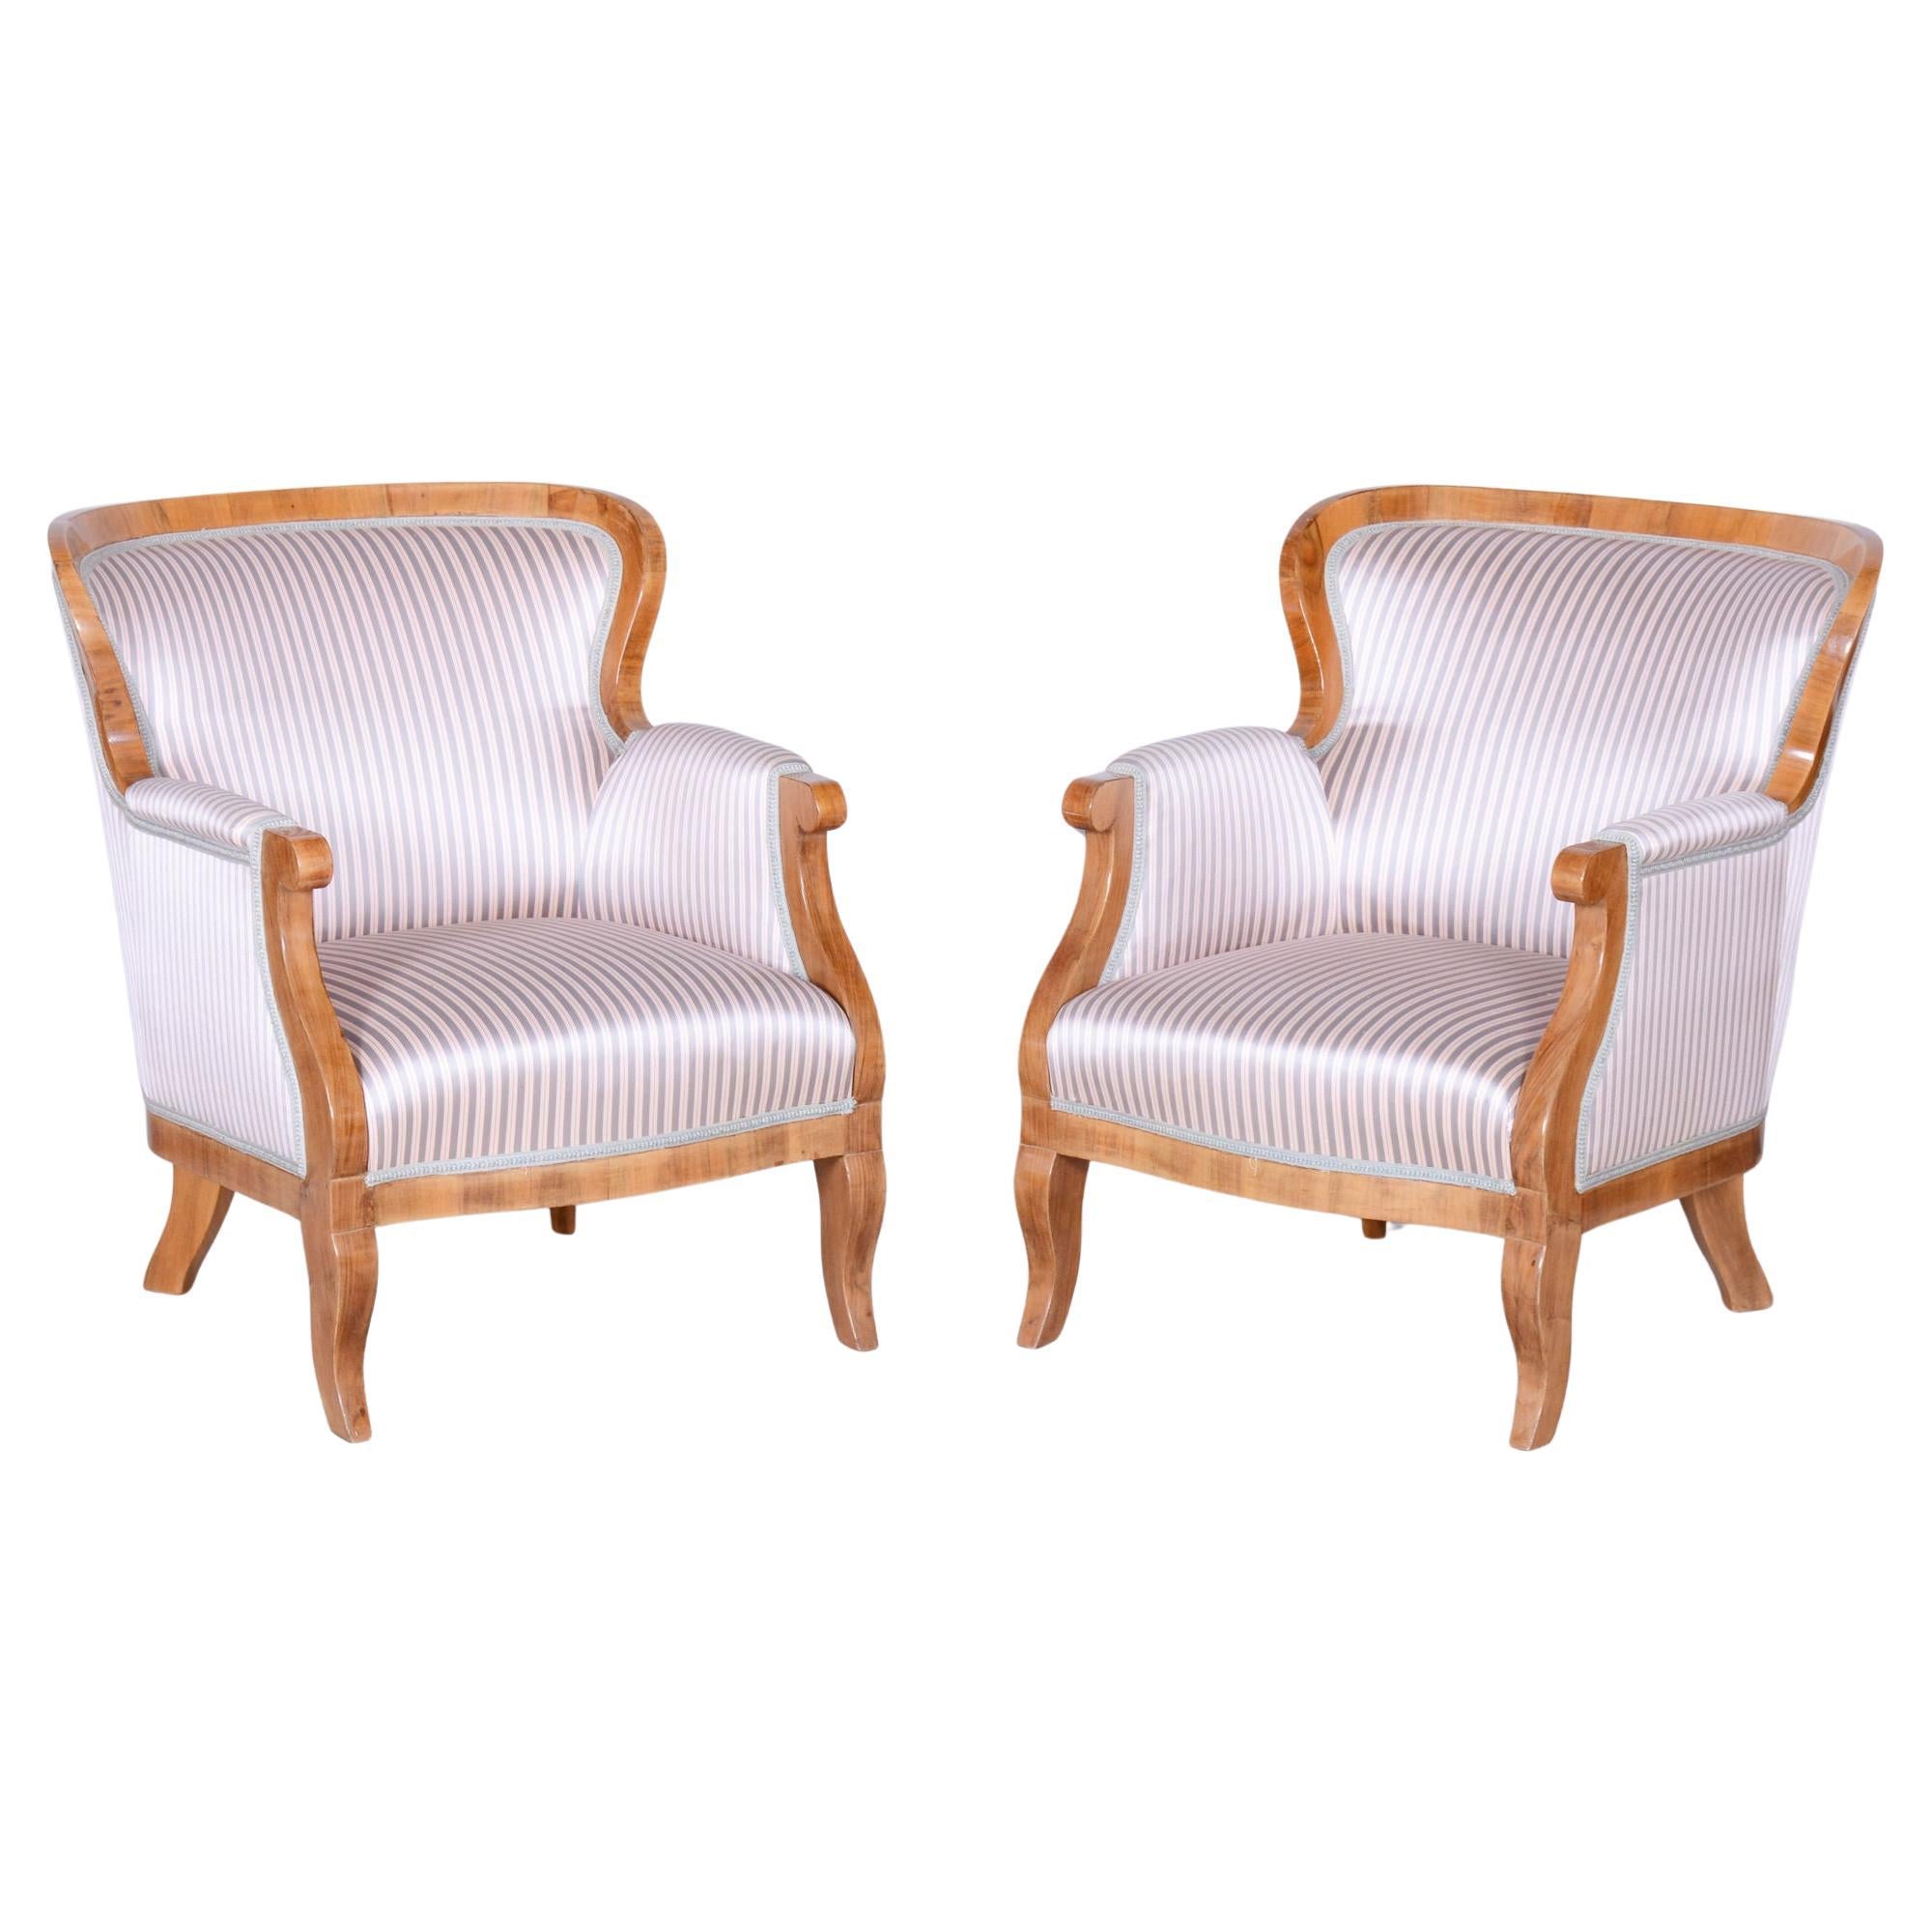 Ensemble de deux fauteuils Biedermeier restaurés, Oak, Spruce, Walnut, Autriche, années 1830